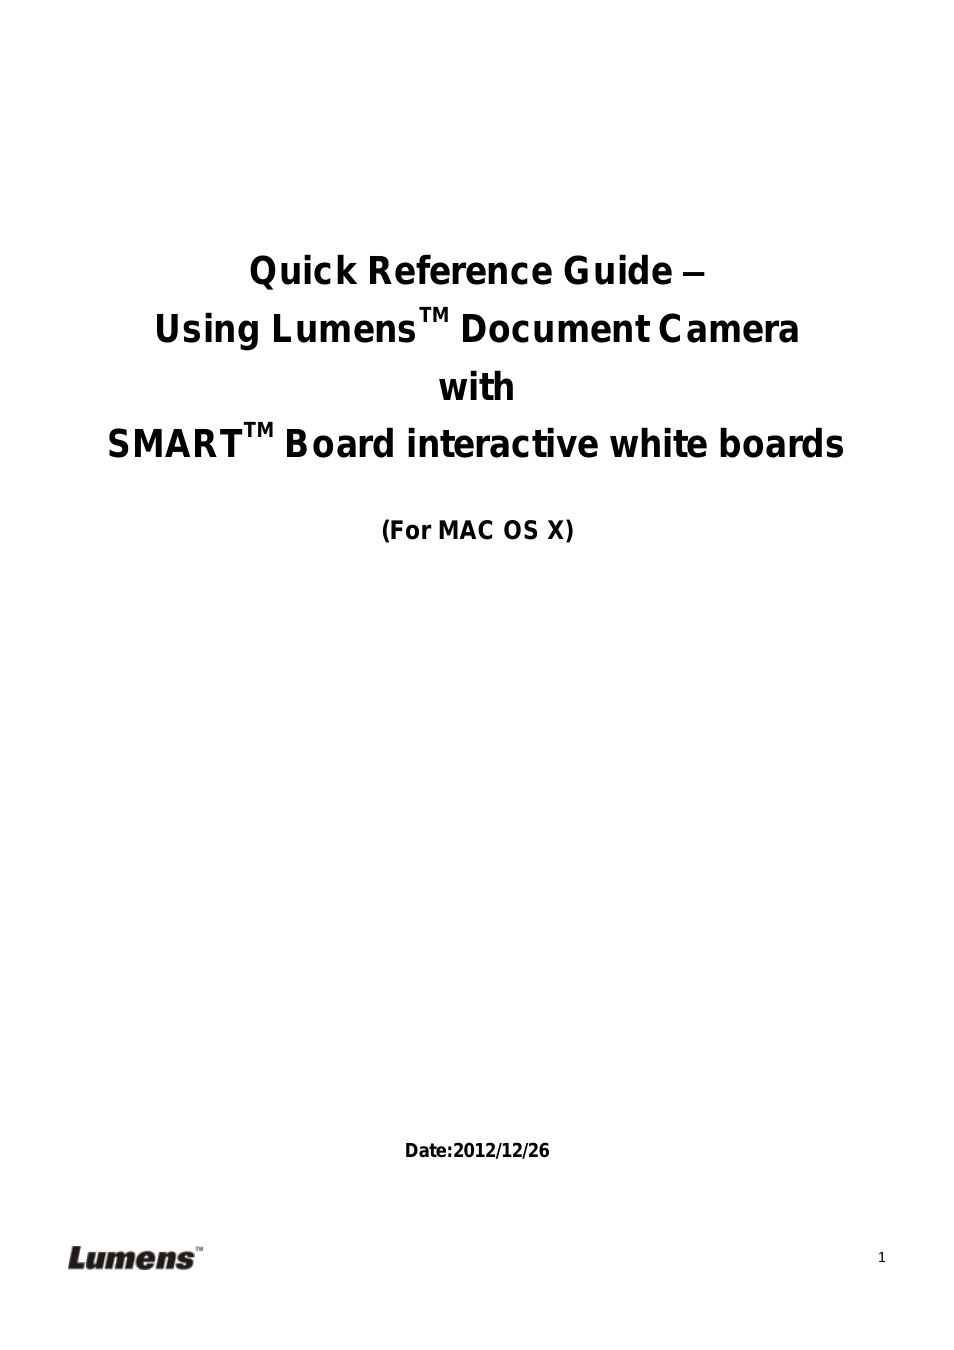 SMART Board(MAC)